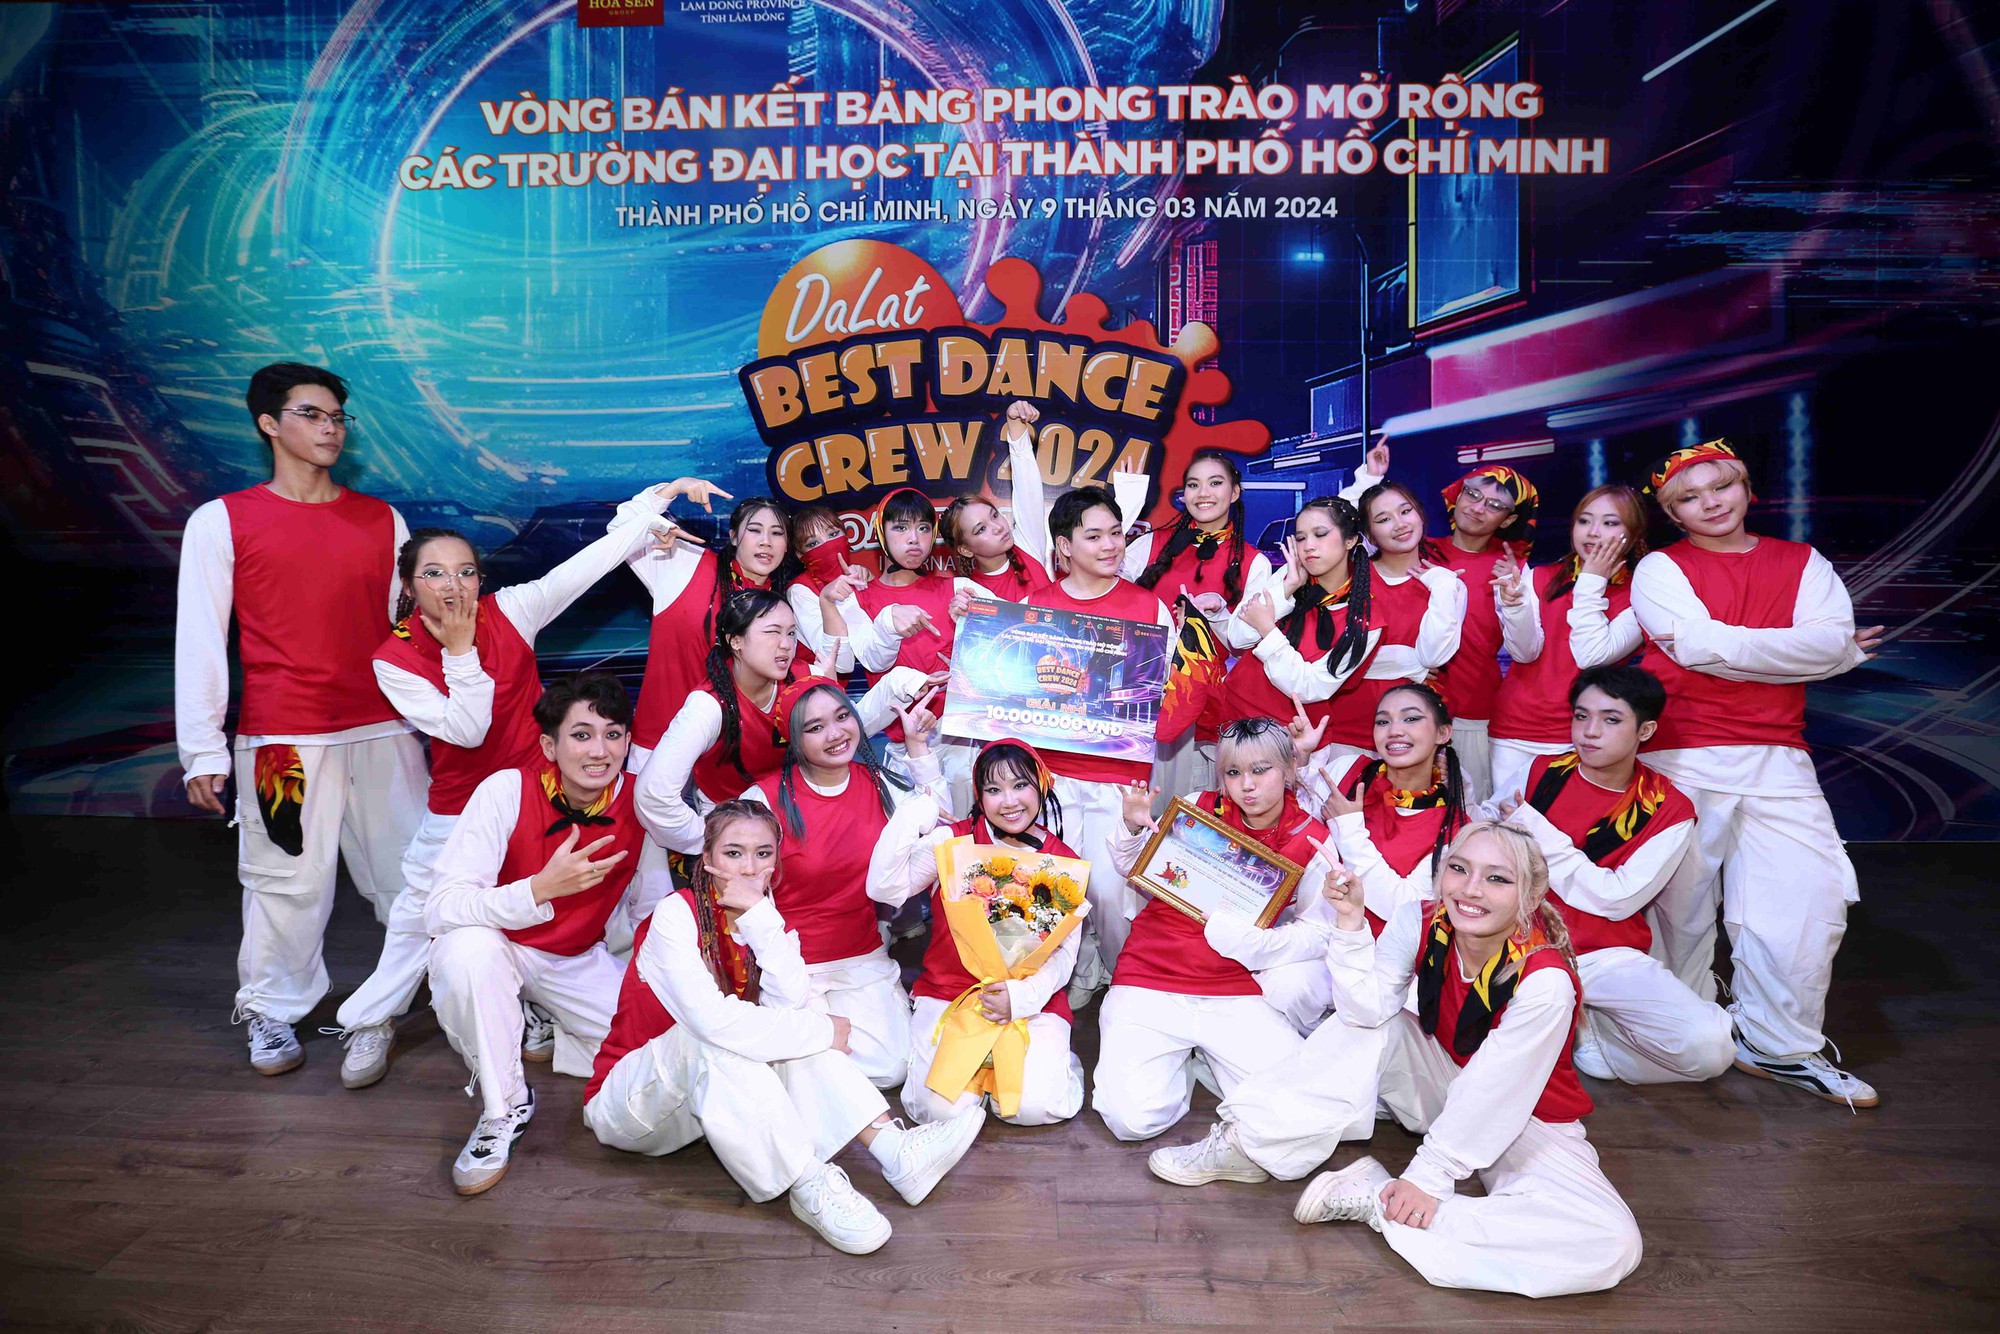 Biên đạo Huỳnh Mến “tiếp lửa” cho các nhóm nhảy sinh viên tại Dalat Best Dance Crew 2024 - Ảnh 3.